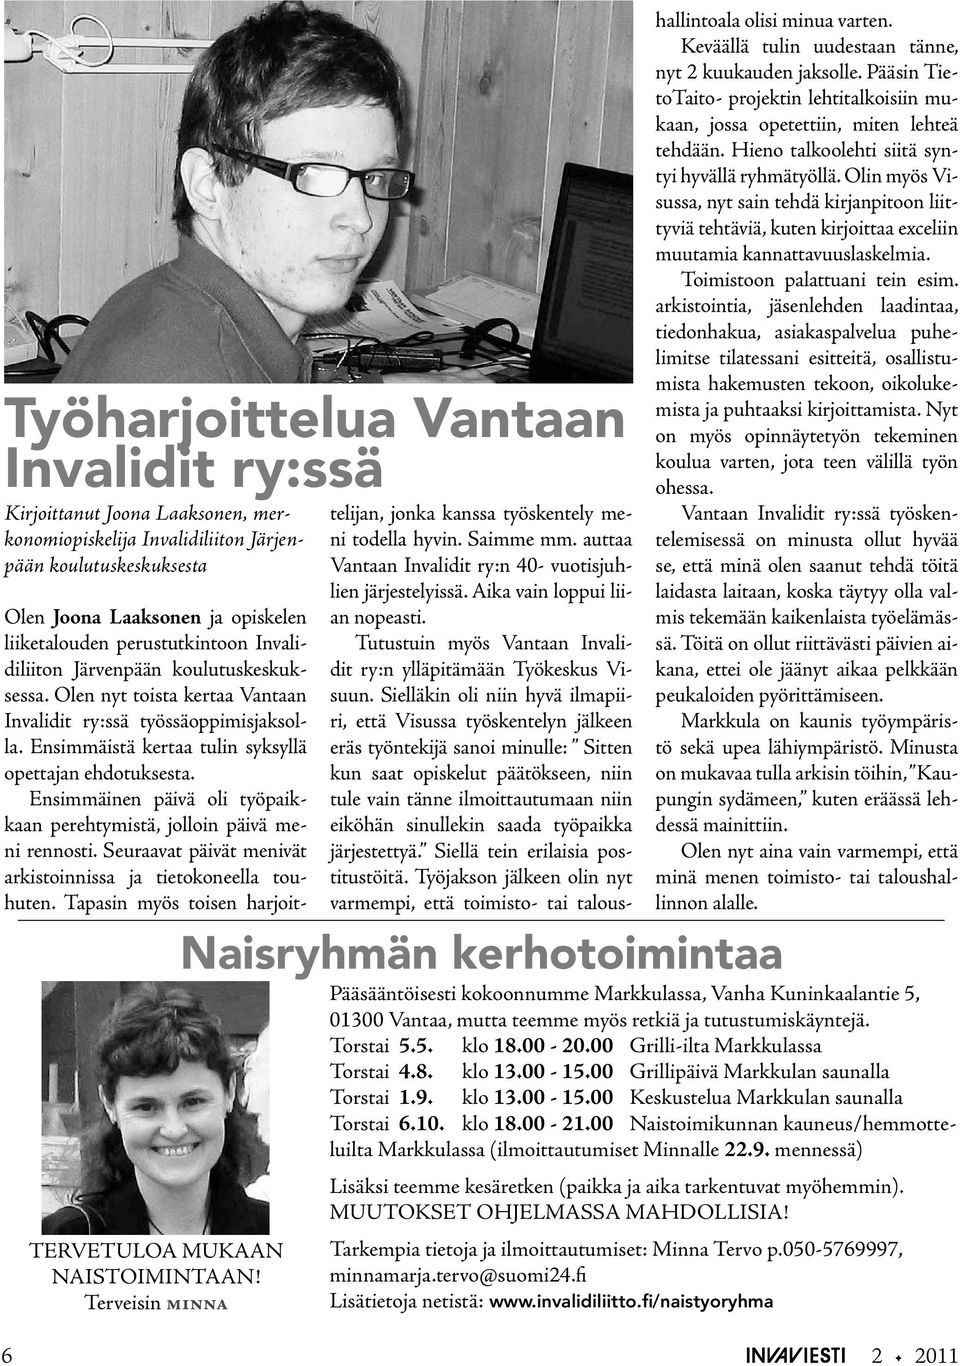 Olen nyt toista kertaa Vantaan Invalidit ry:ssä työssäoppimisjaksolla. Ensimmäistä kertaa tulin syksyllä opettajan ehdotuksesta.